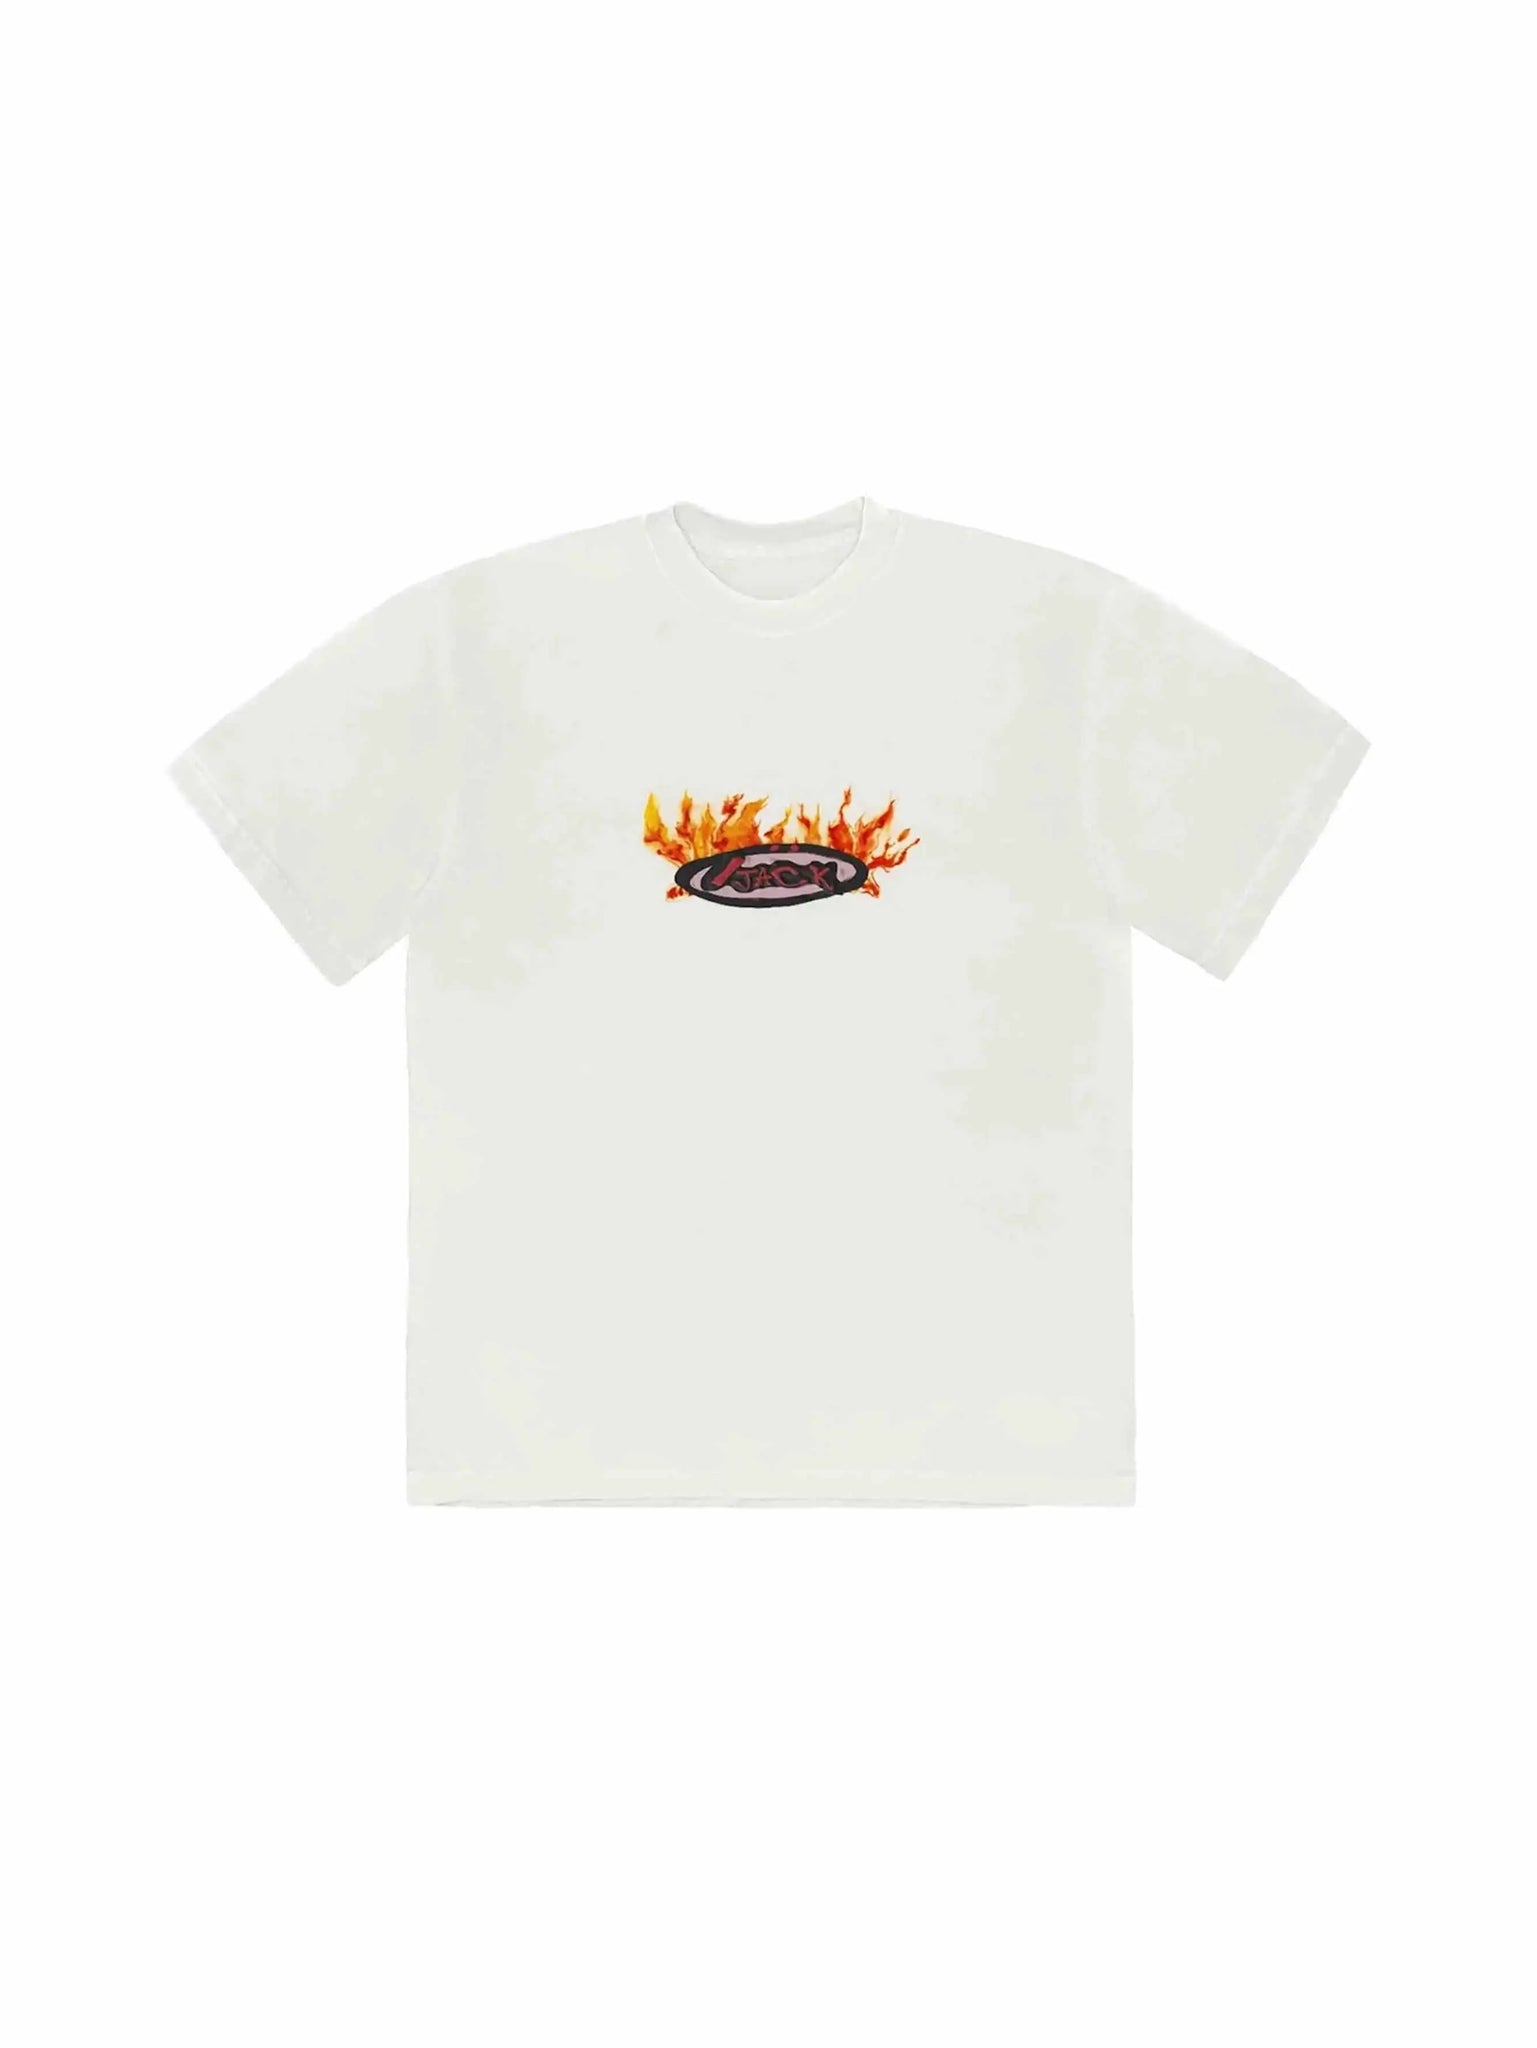 Travis Scott Cactus Jack Flame T-shirt Cream - Prior